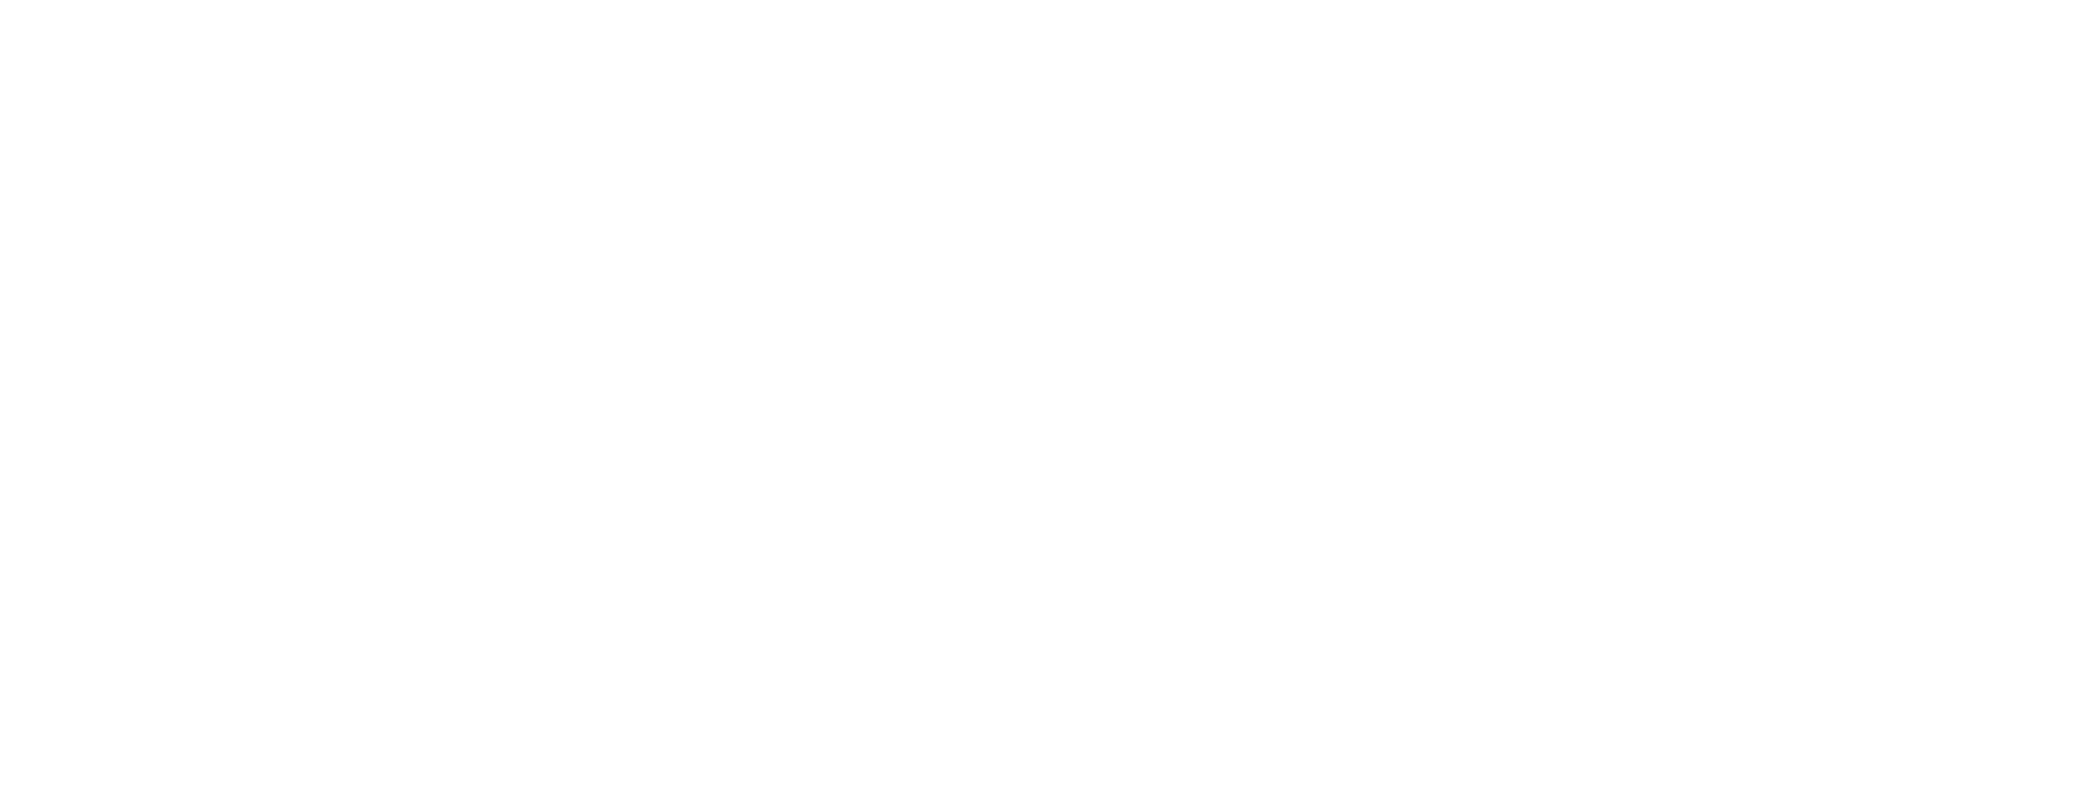 https://citationvault.com/wp-content/uploads/cpop_main_uploads/2006/AAA-Paving-Since-1964.png